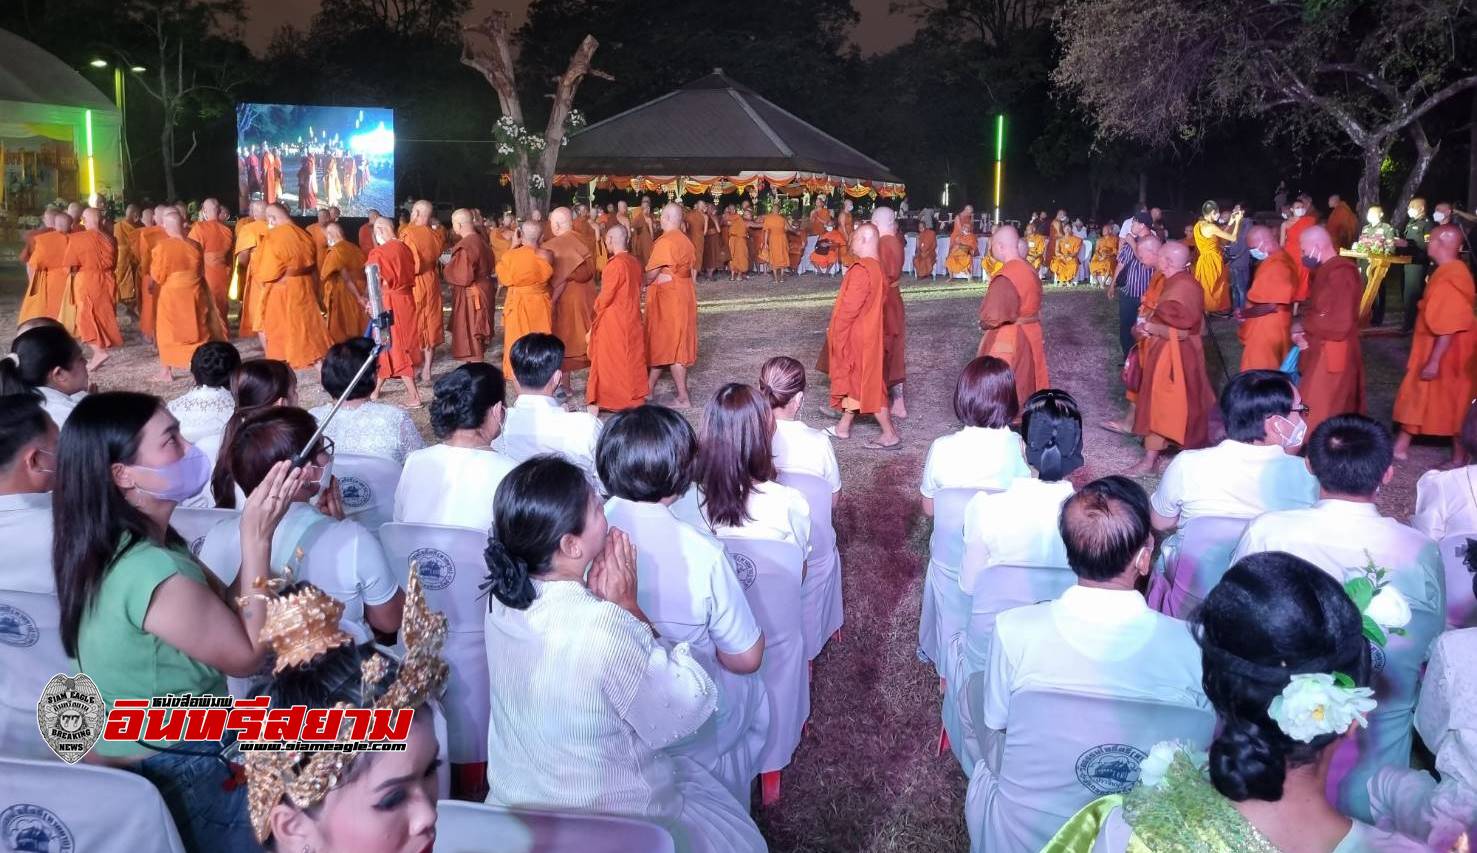 ปราจีนบุรี-เปิดเทศกาลมาฆะปูรมีศรีปราจีนครั้งที่ 37 หน้ารอยพระพุทธบาทคู่ใหญ่-เก่าแก่ที่สุดในอาเซี่ยน